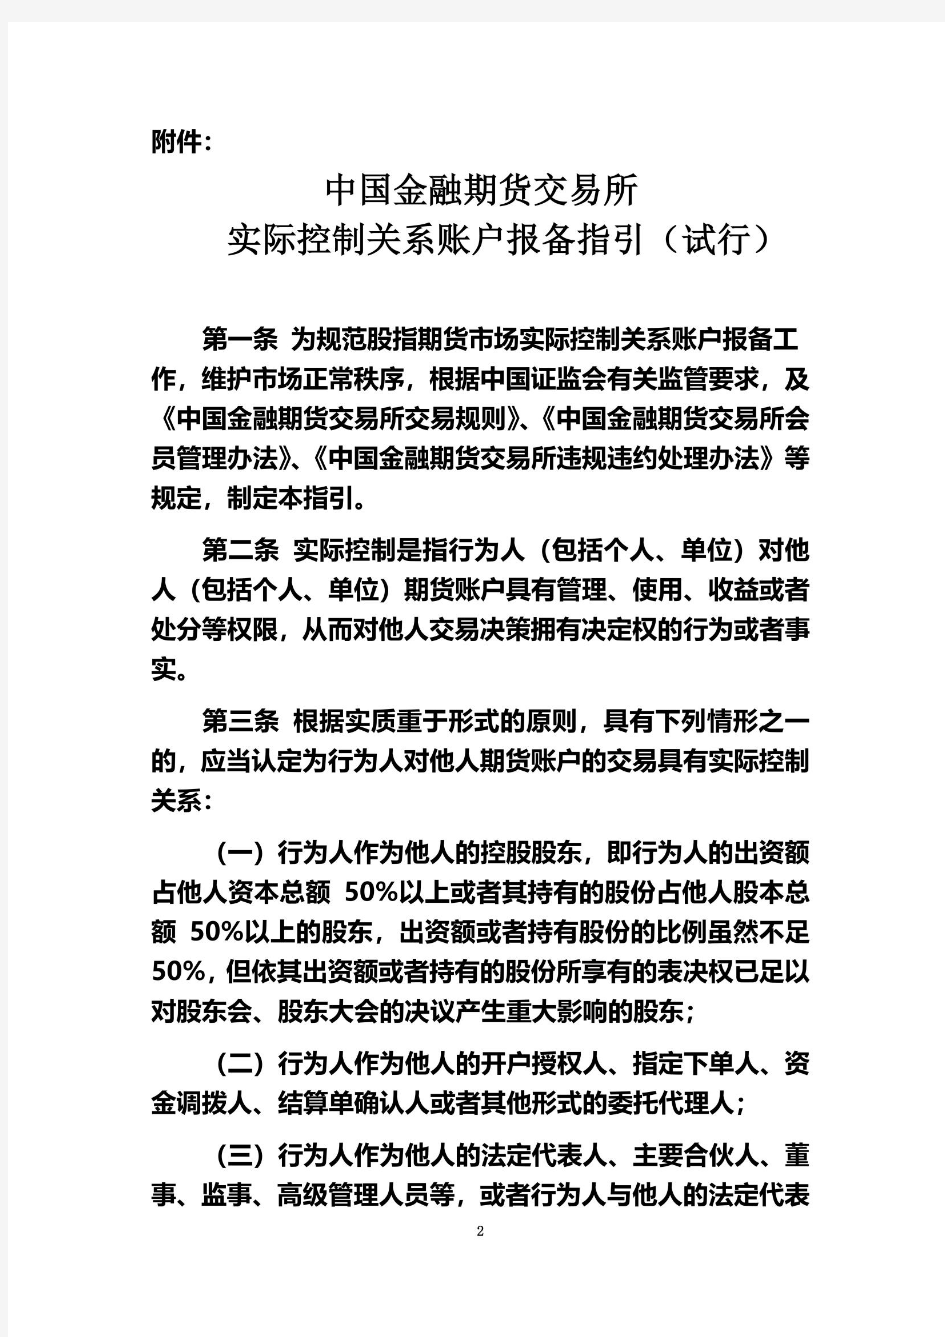 中国金融期货交易所实际控制关系账户报备指引(试行)